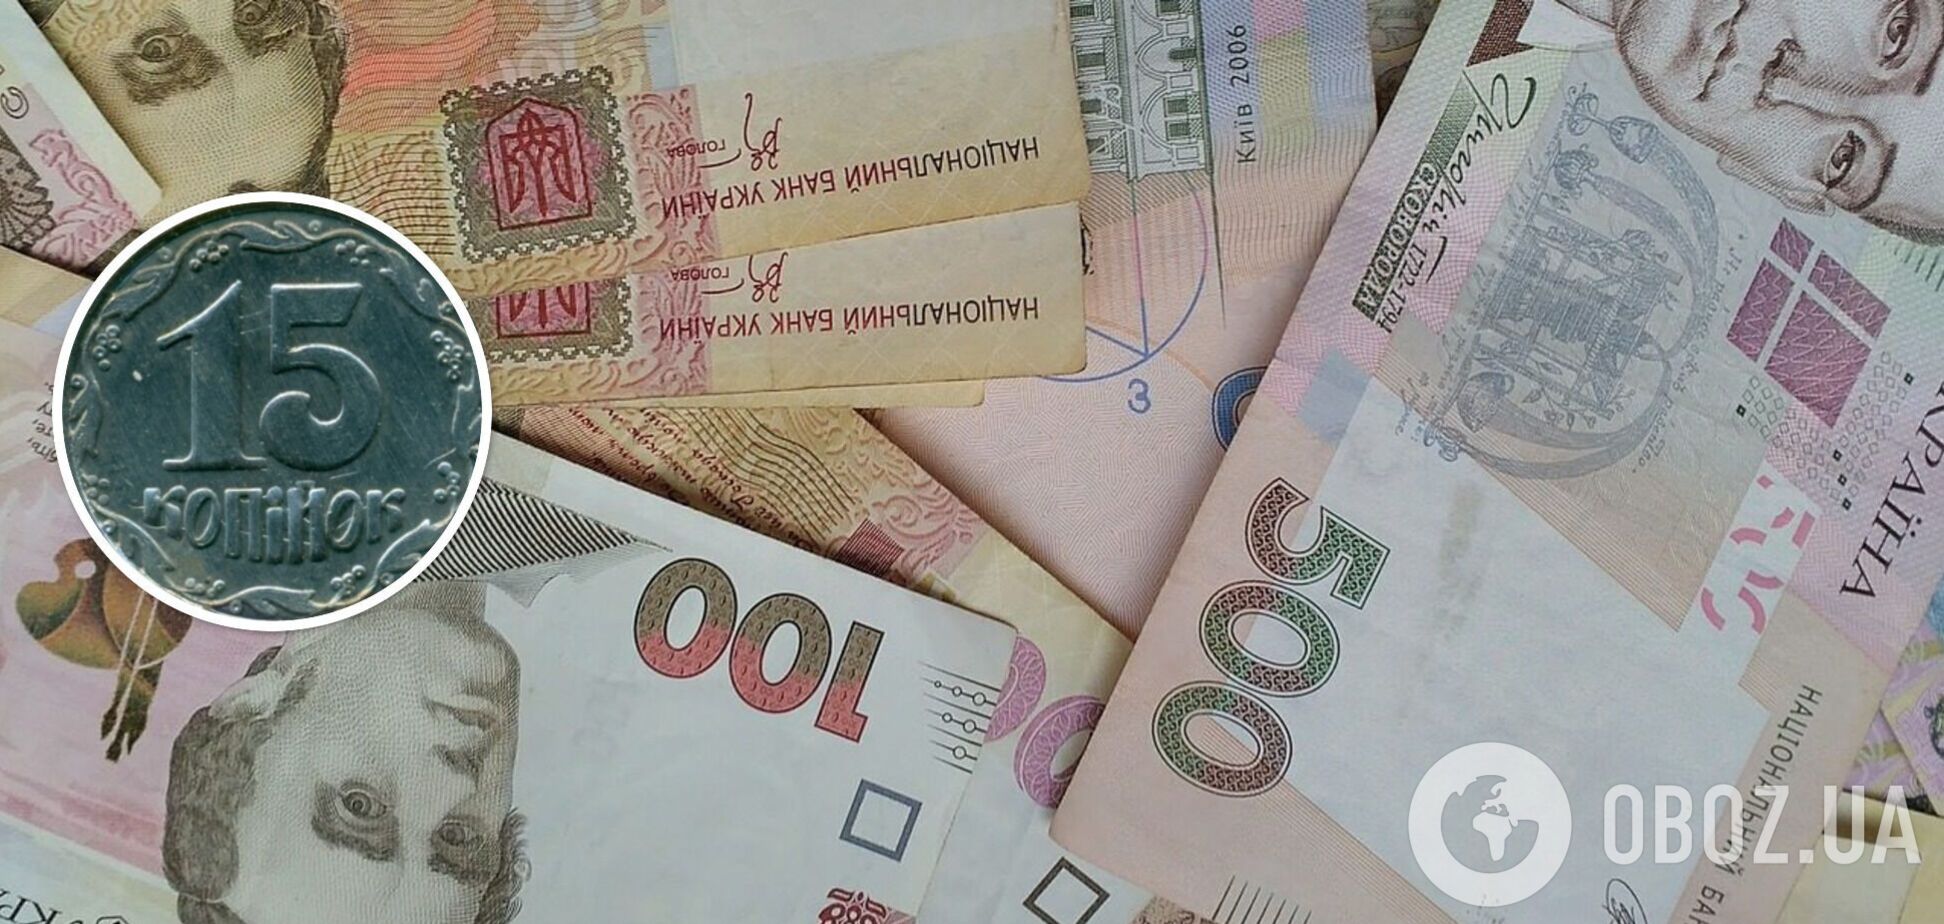 Колекціонери полюють на українські монети